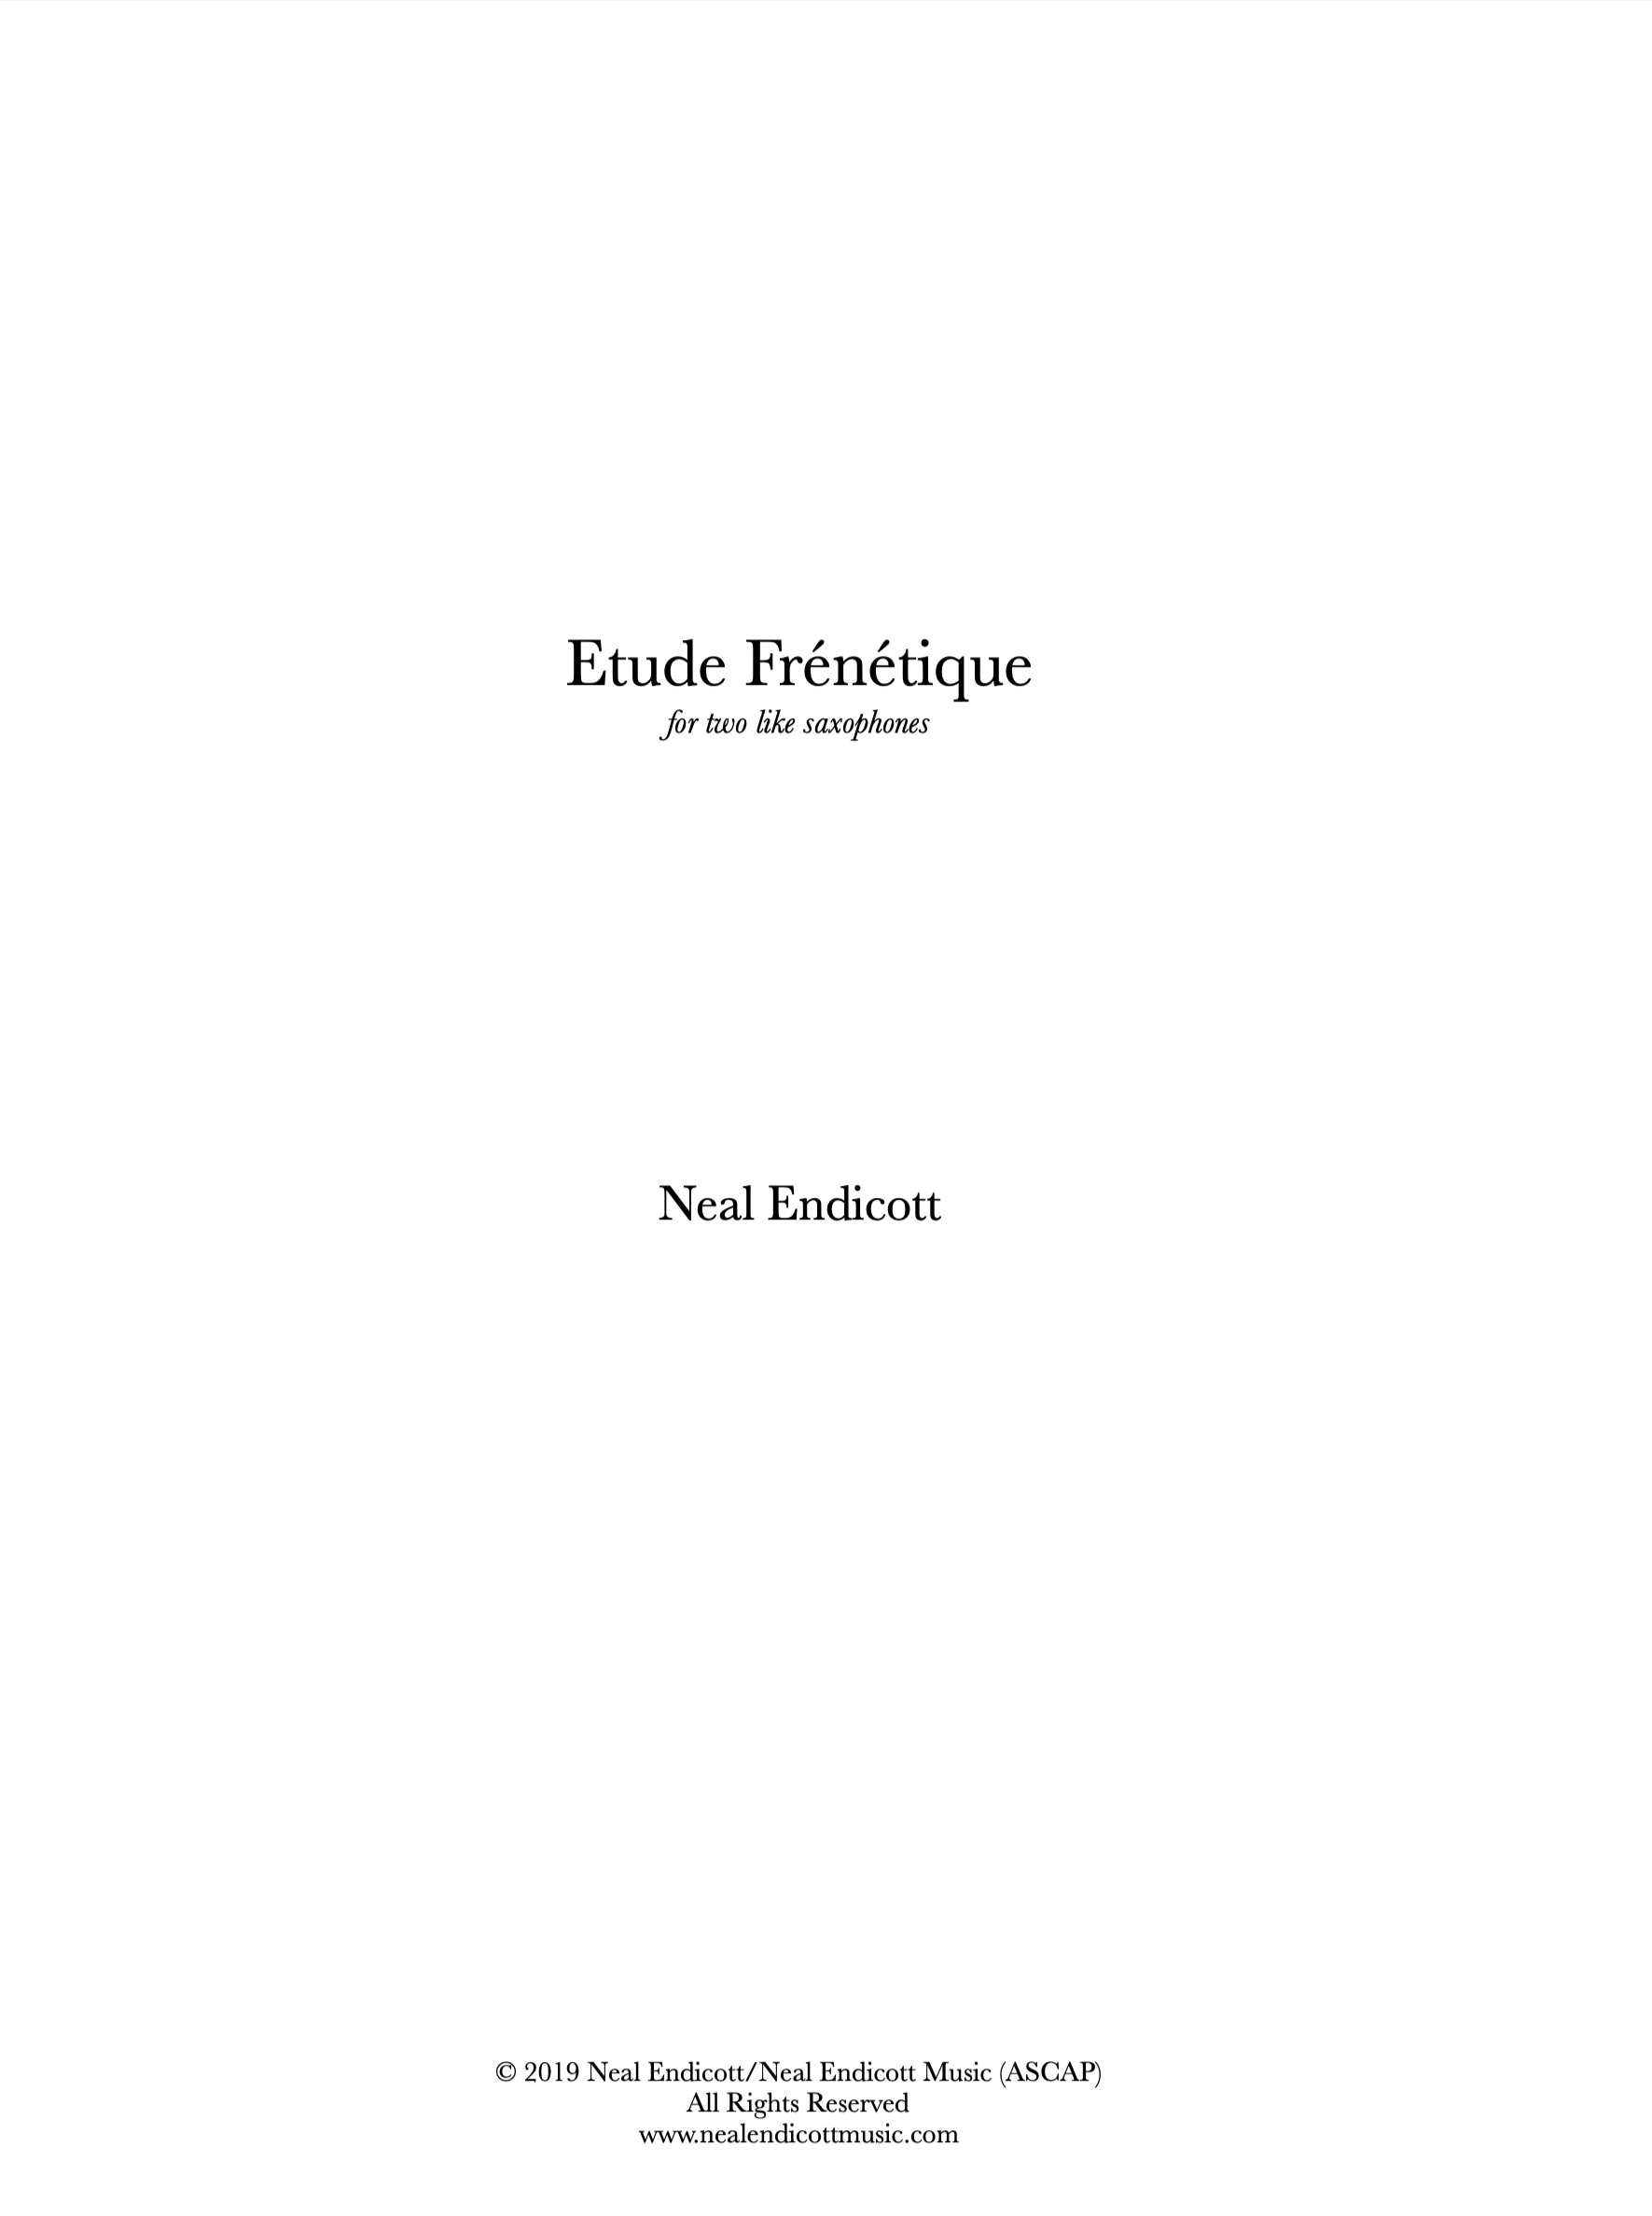 Etude Frénétique by Neal Endicott